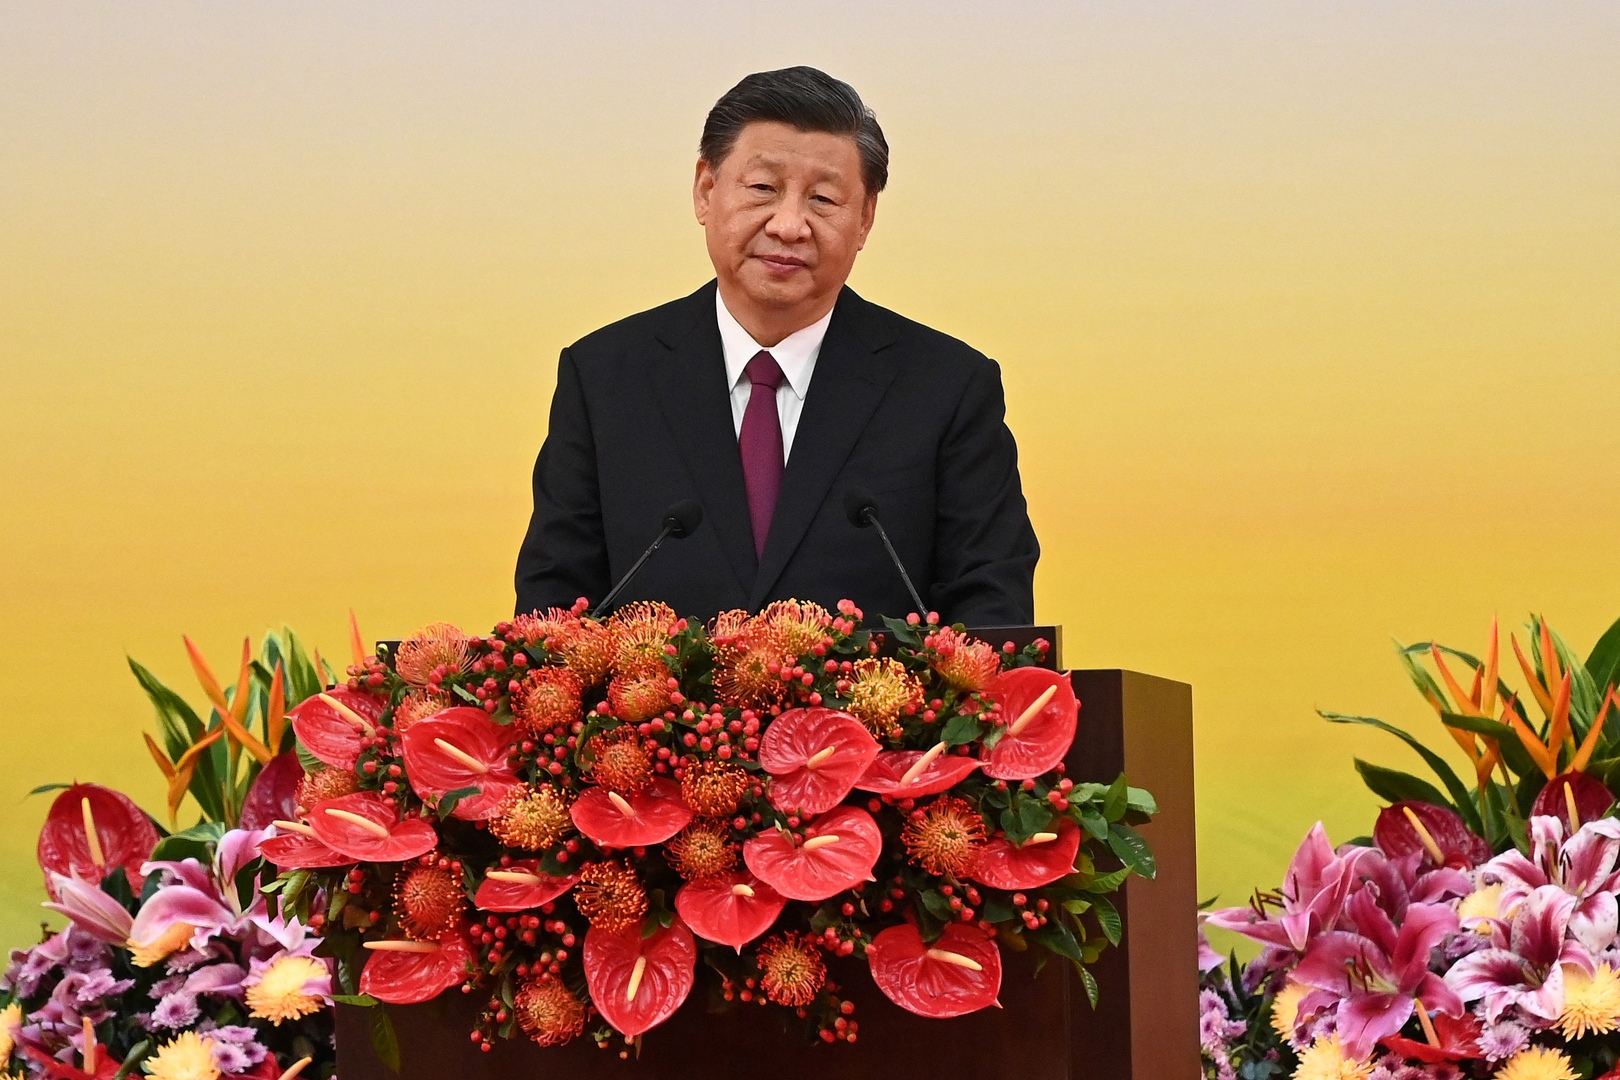 ظهور الرئيس الصيني عبر التلفزيون الحكومي وسط تكهنات عن سبب غيابه (صور)